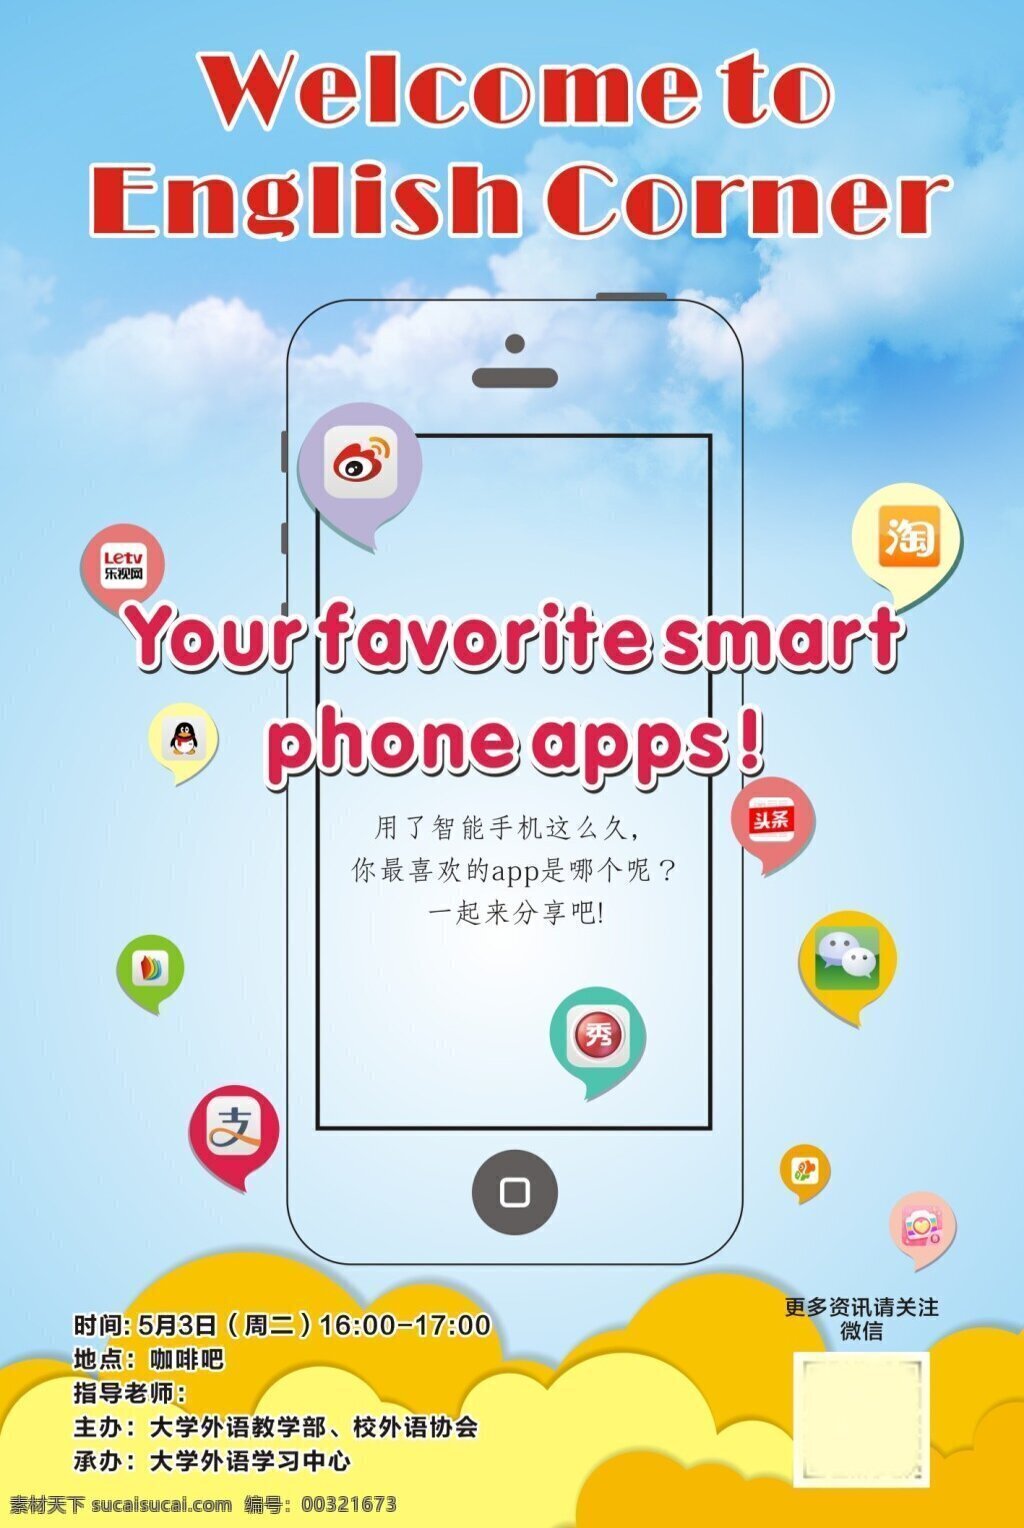 英语角 app 海报 app图标 手画手机 蓝色背景 云背景 黄色